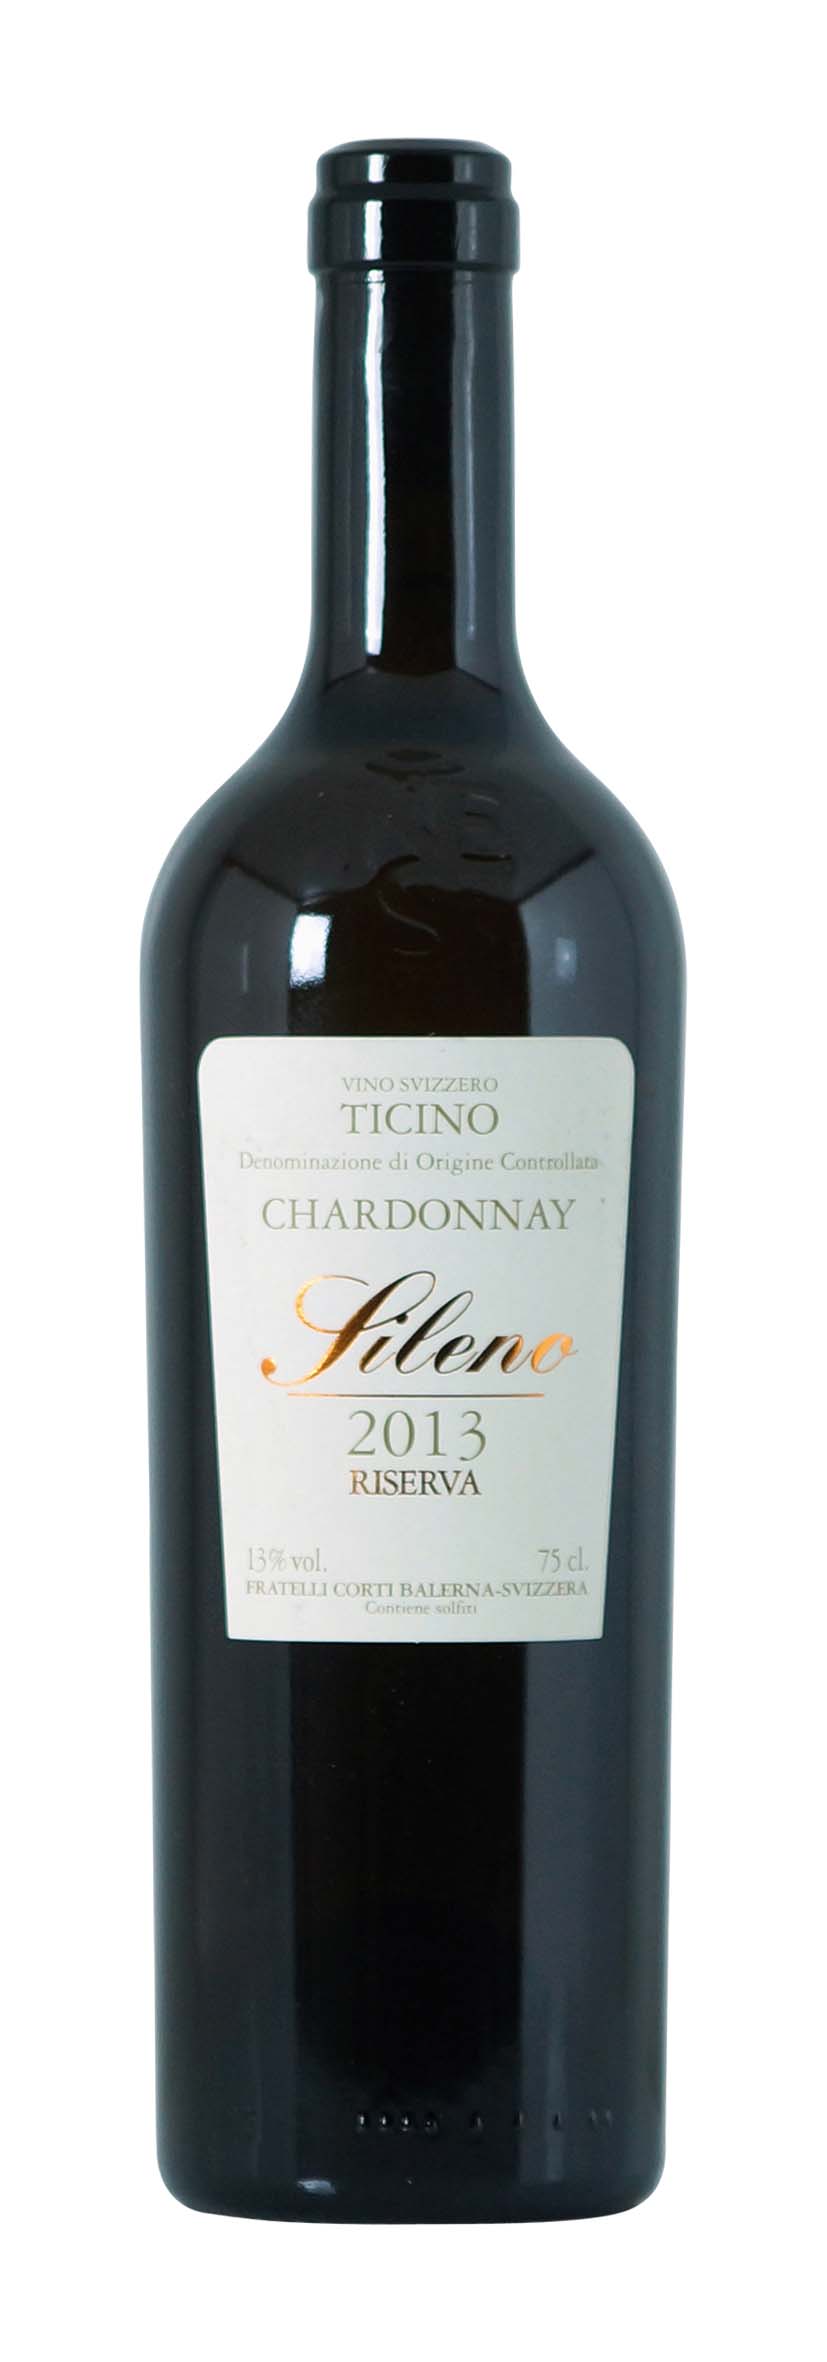 Ticino DOC Chardonnay Sileno Riserva 2013